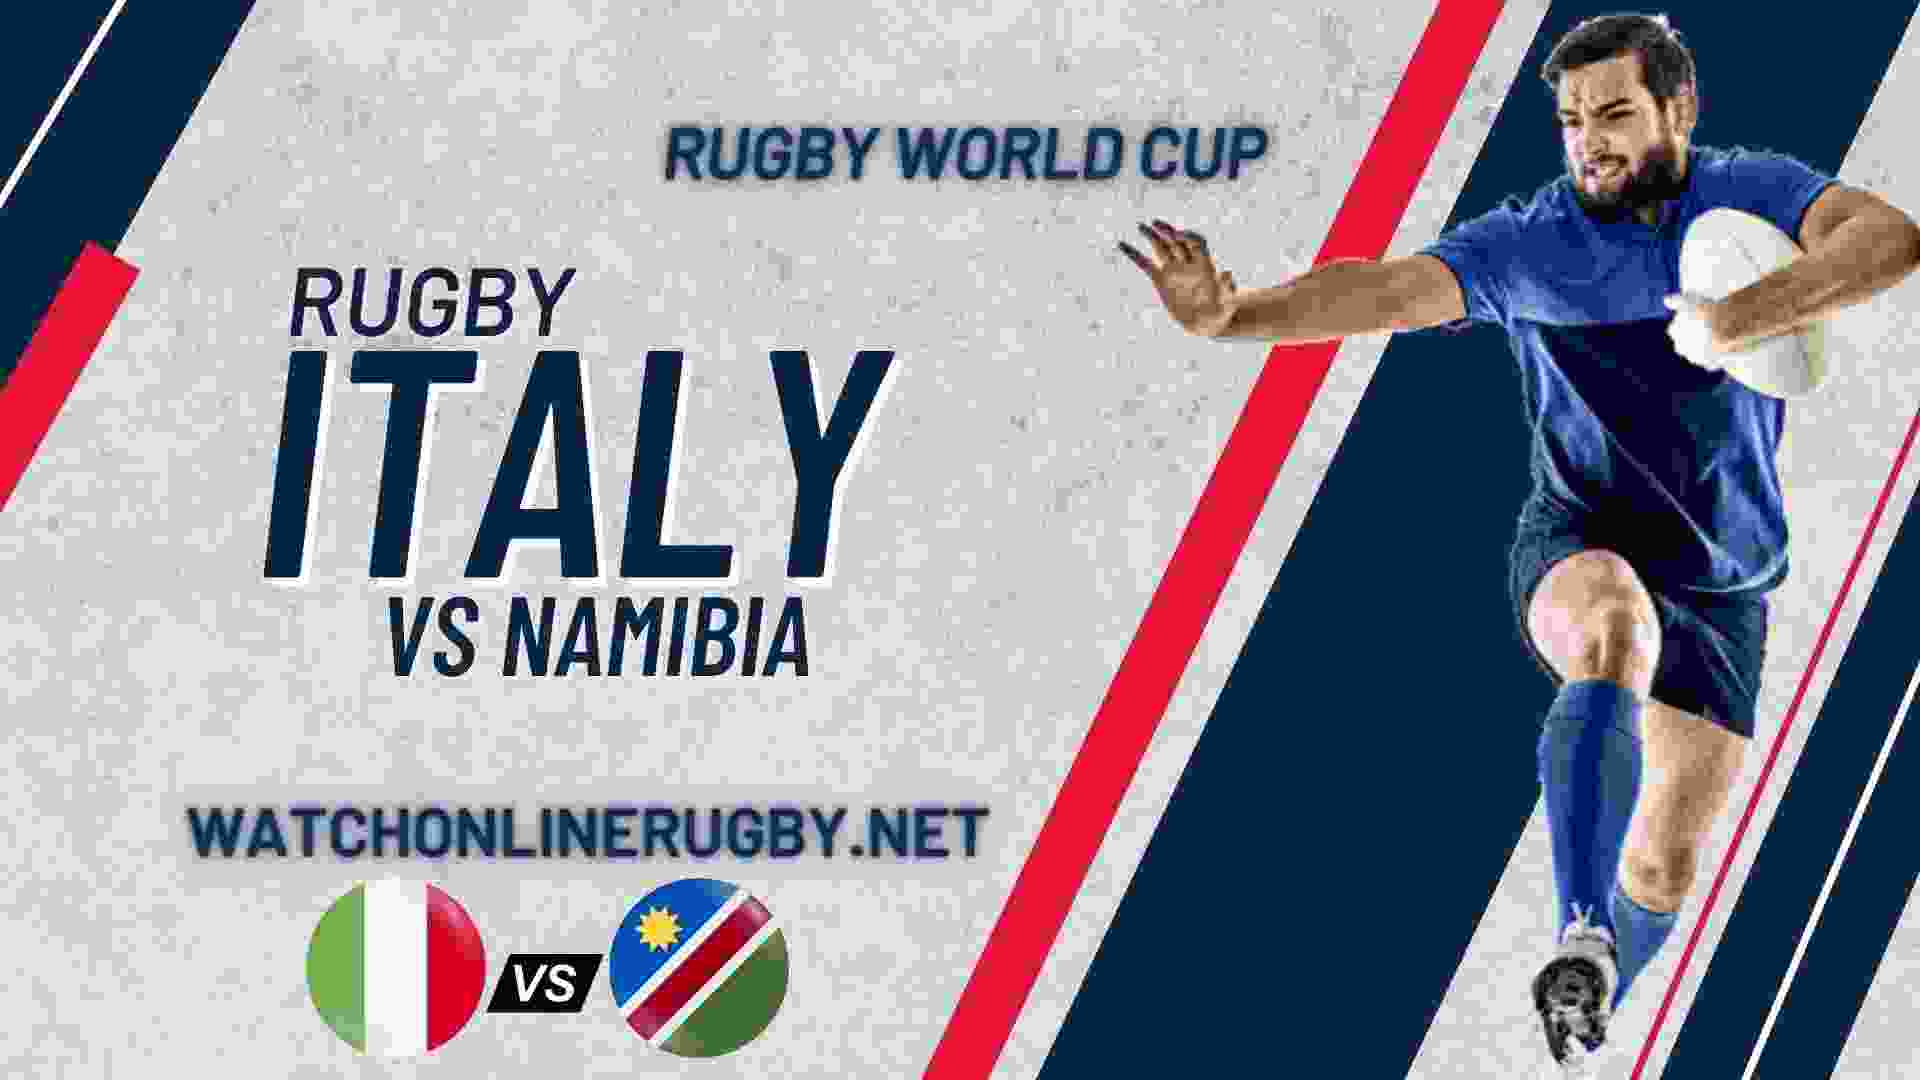 RWC 2019 Namibia VS Italy Live Stream